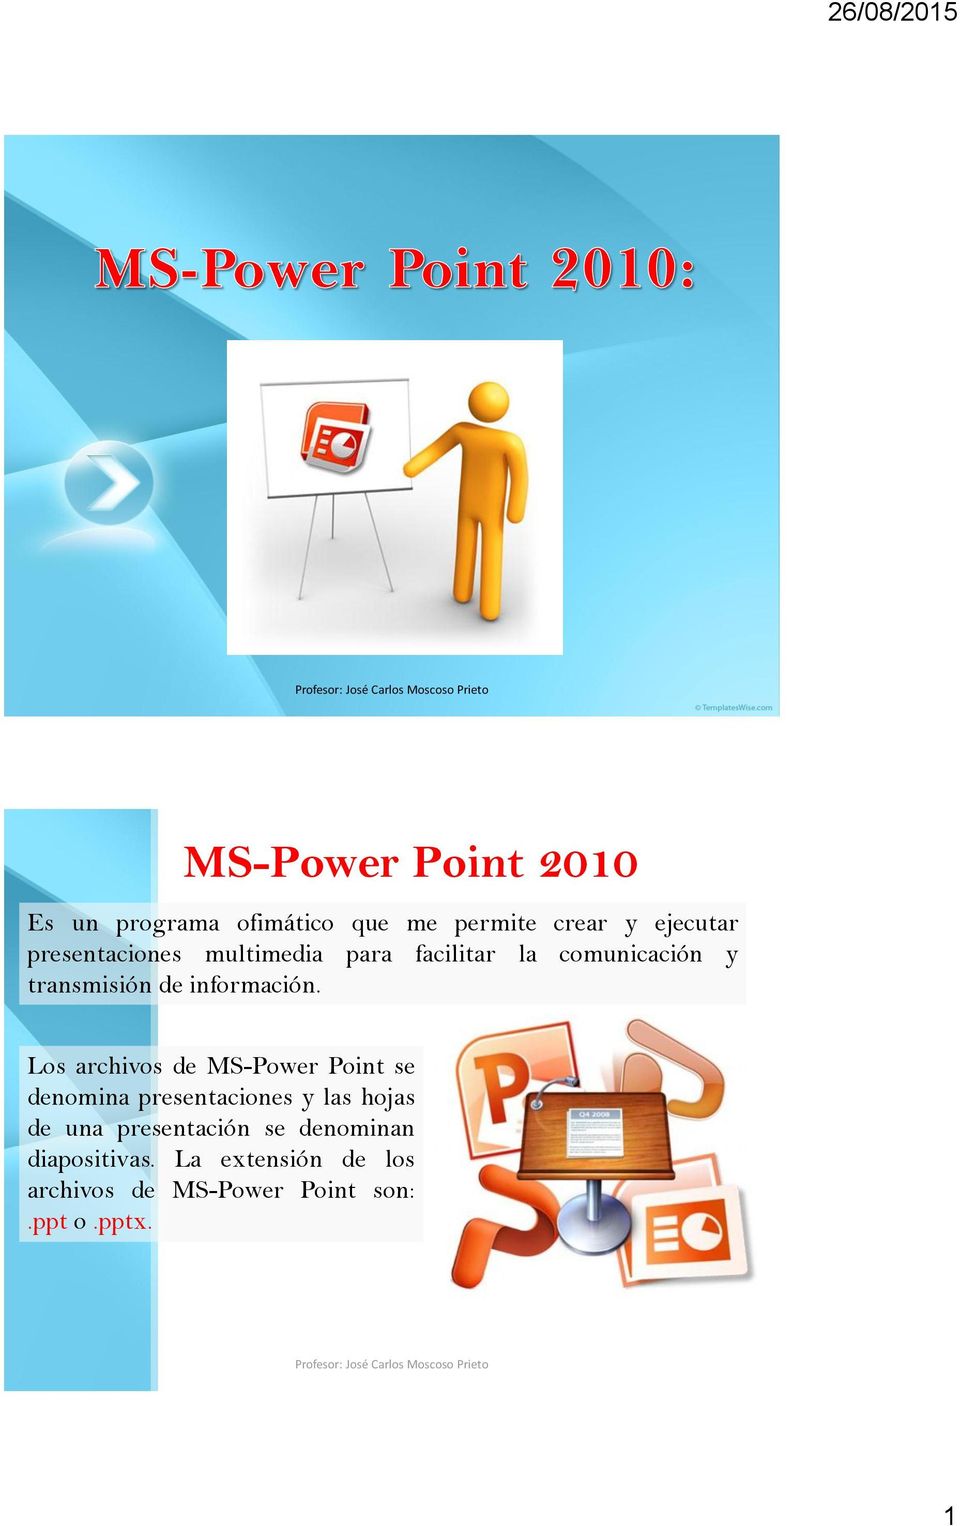 Los archivos de MS-Power Point se denomina presentaciones y las hojas de una